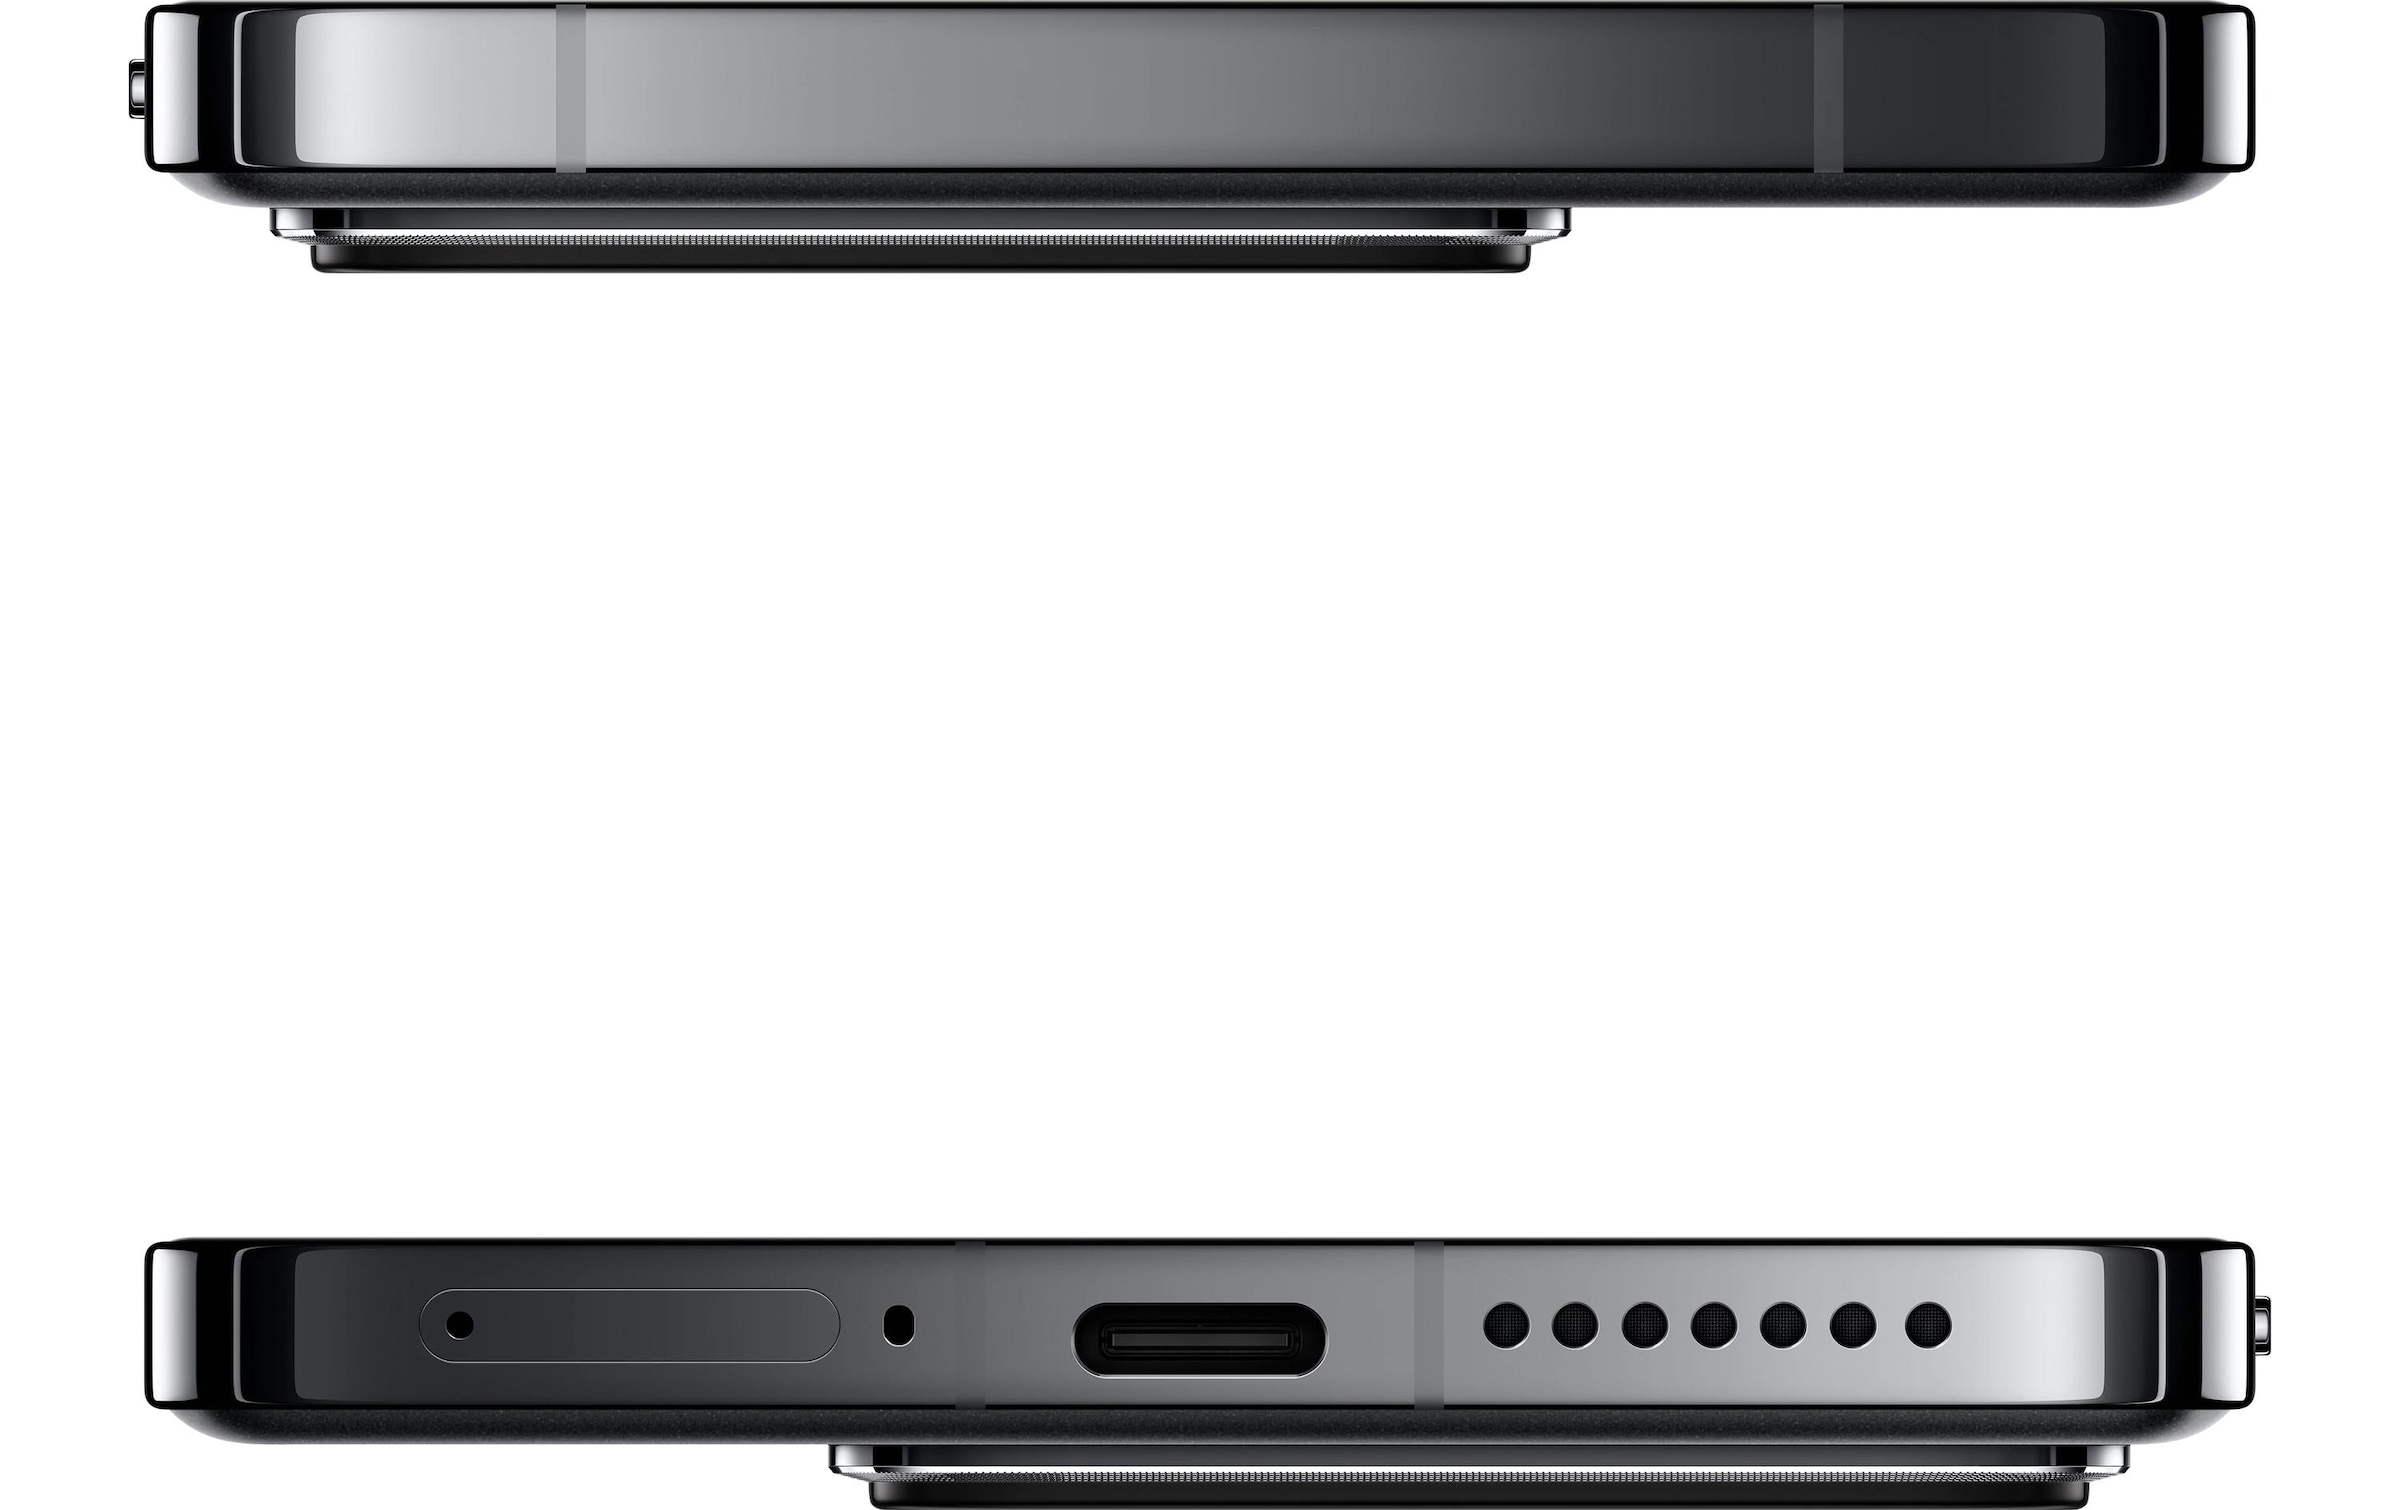 Xiaomi Smartphone »14 512 GB Schwarz«, Schwarz, 15,18 cm/6,36 Zoll, 512 GB Speicherplatz, 50 MP Kamera